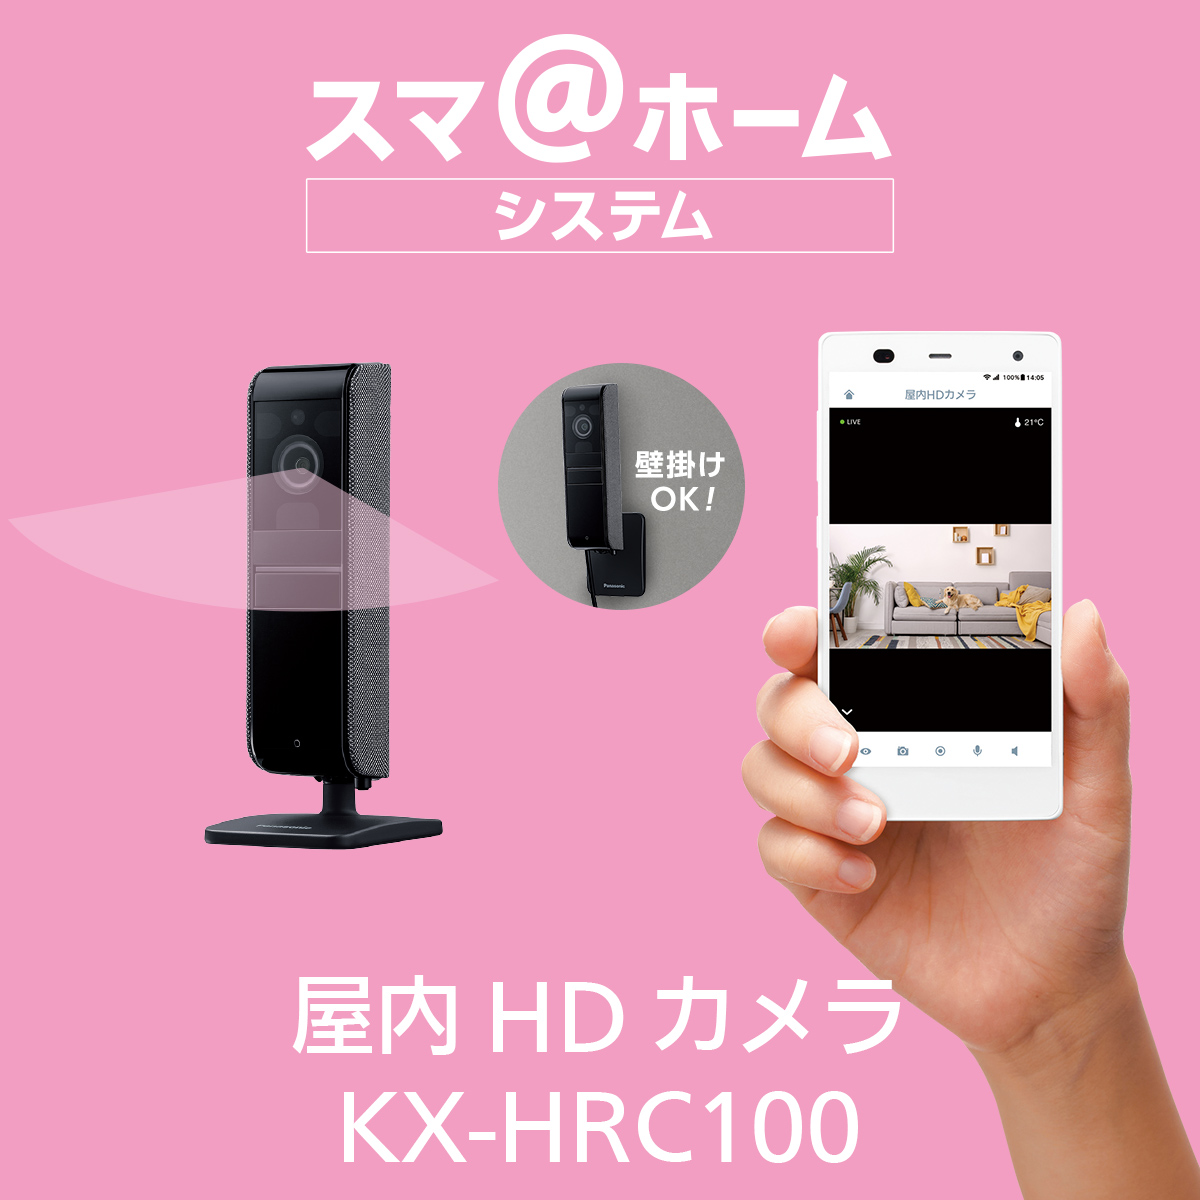 概要 屋内HDカメラ KX-HRC100 | ホームネットワーク（ペットカメラ・ベビーモニターなど） | Panasonic